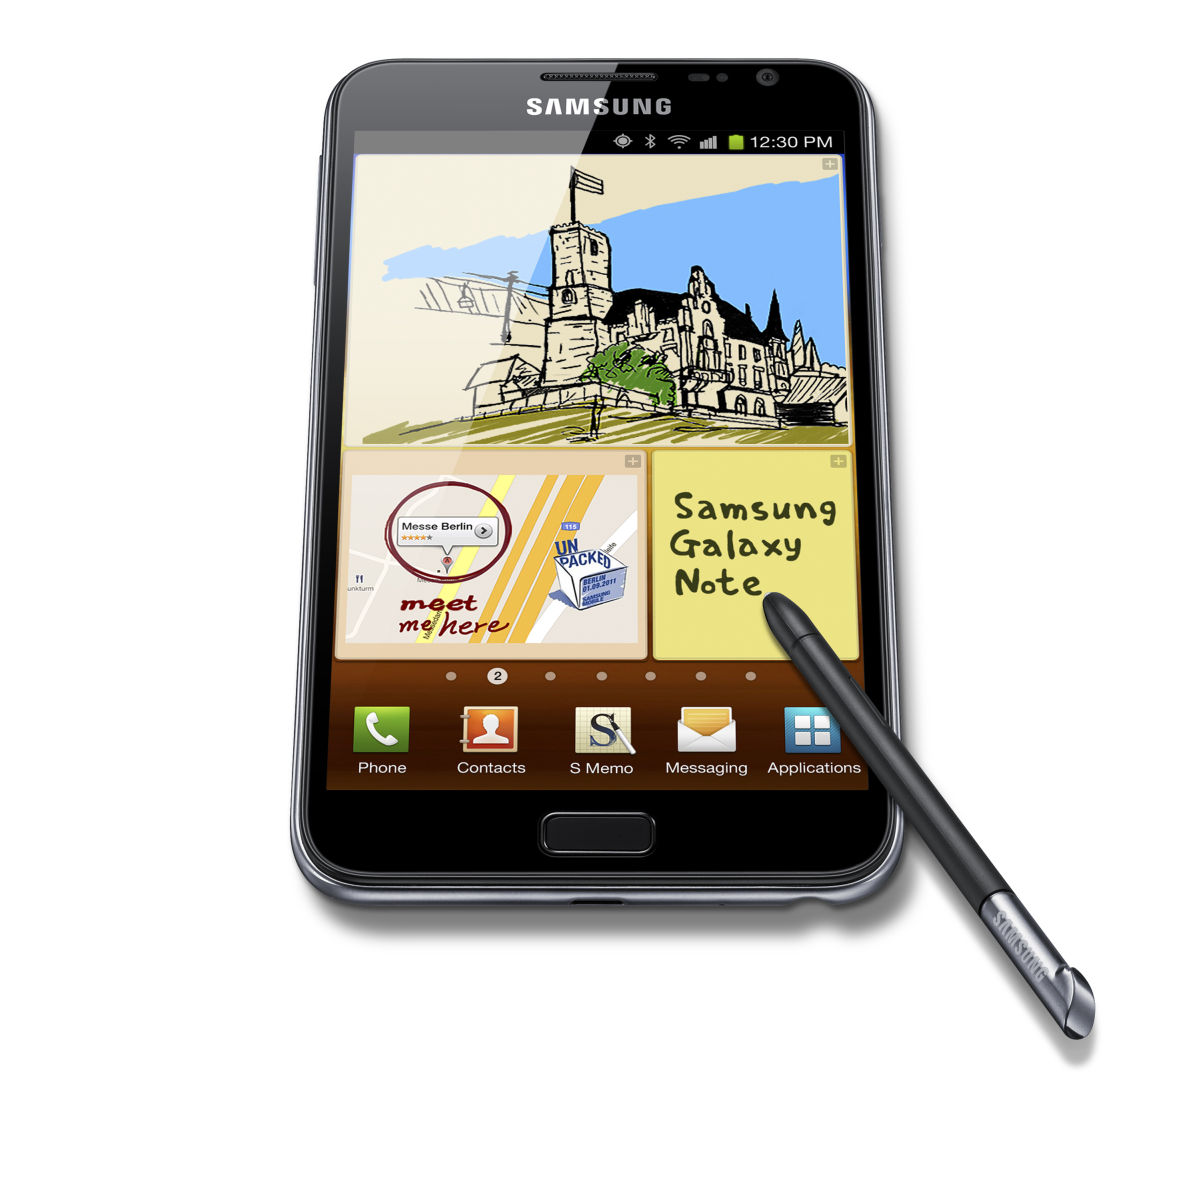 Samsung: smartphon i tablet w jednym